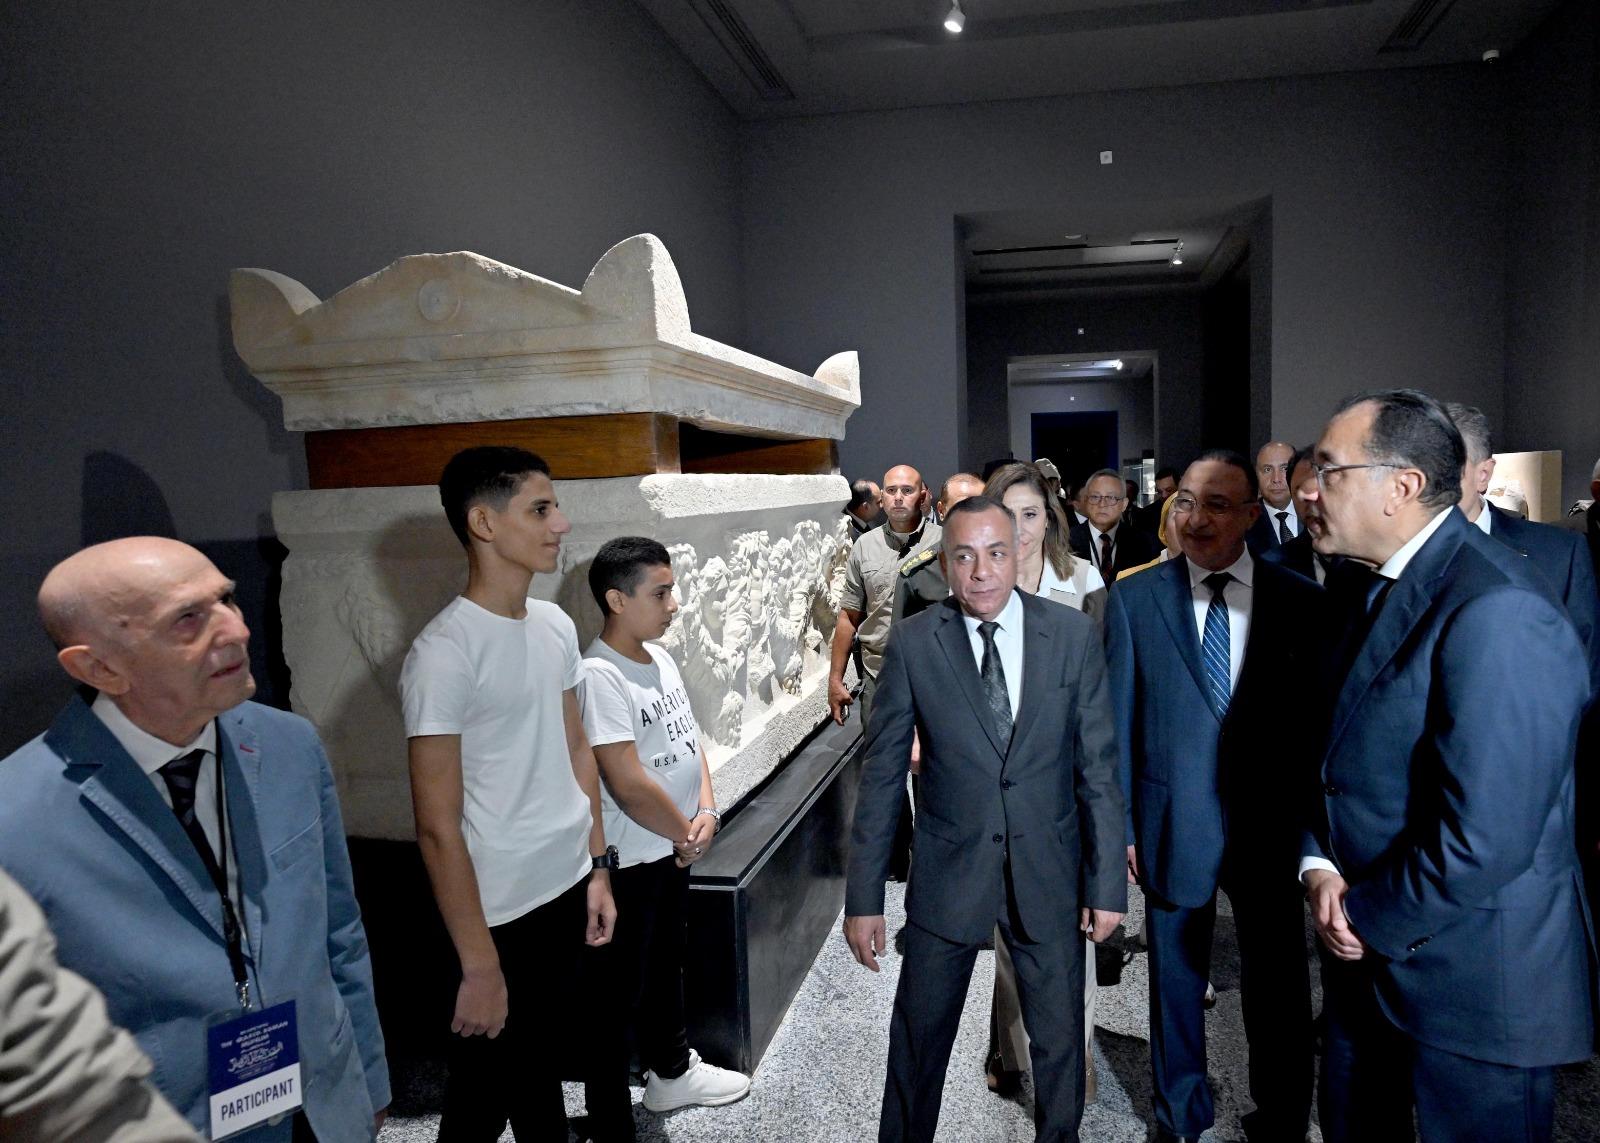 لقطات من افتتاح رئيس مجلس الوزراء للمتحف اليوناني الروماني بالإسكندرية